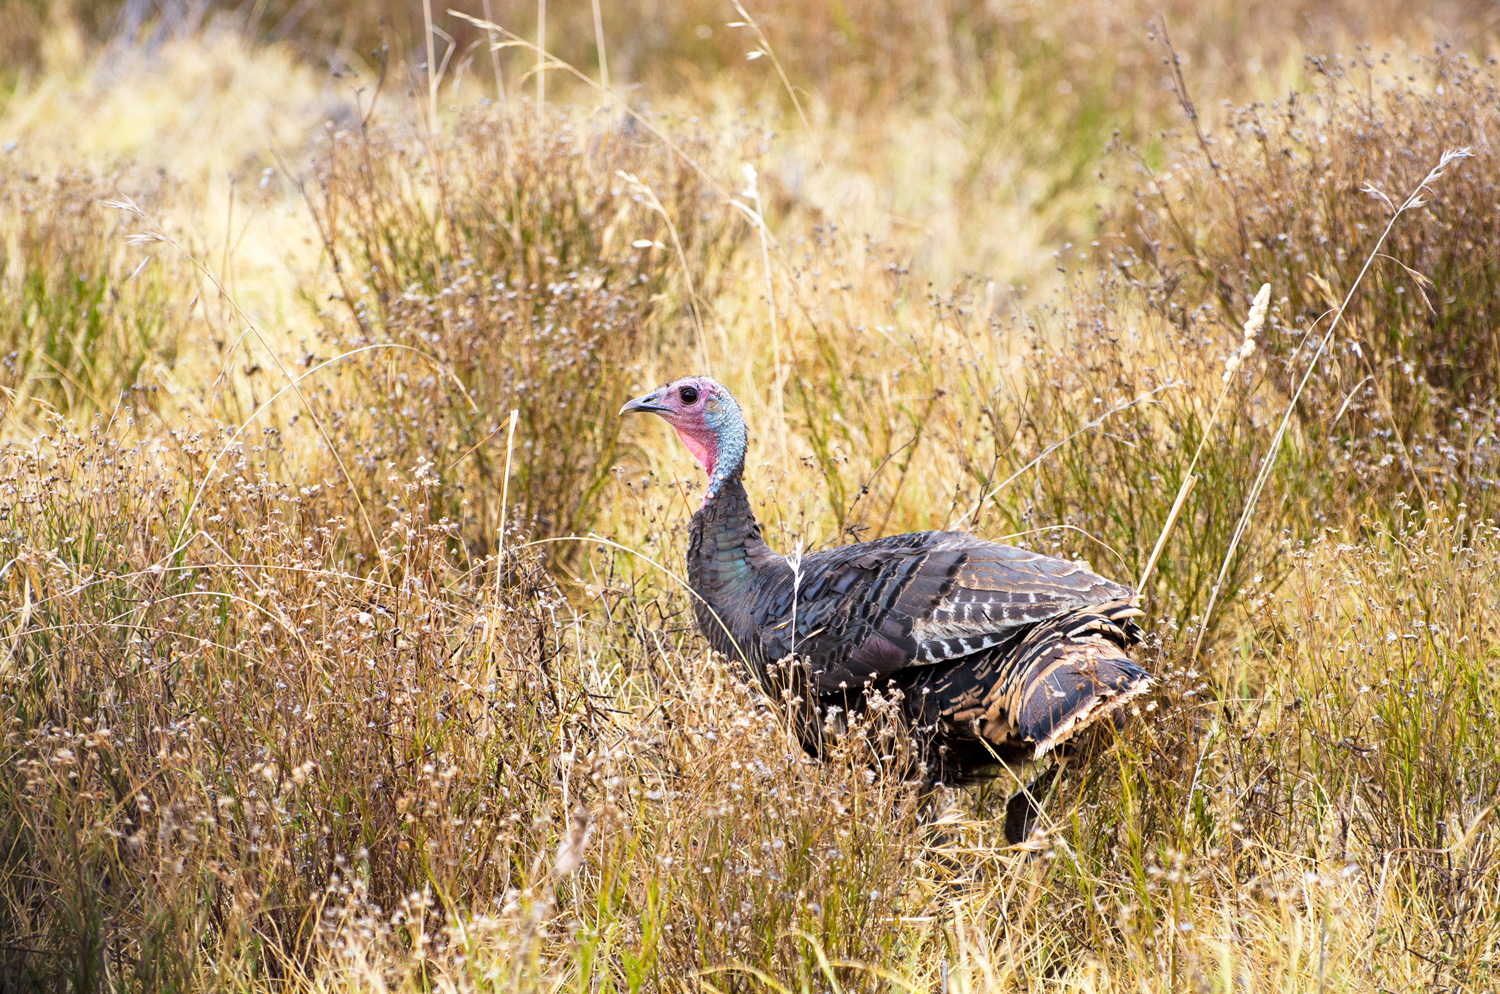 hen wild turkey in a field